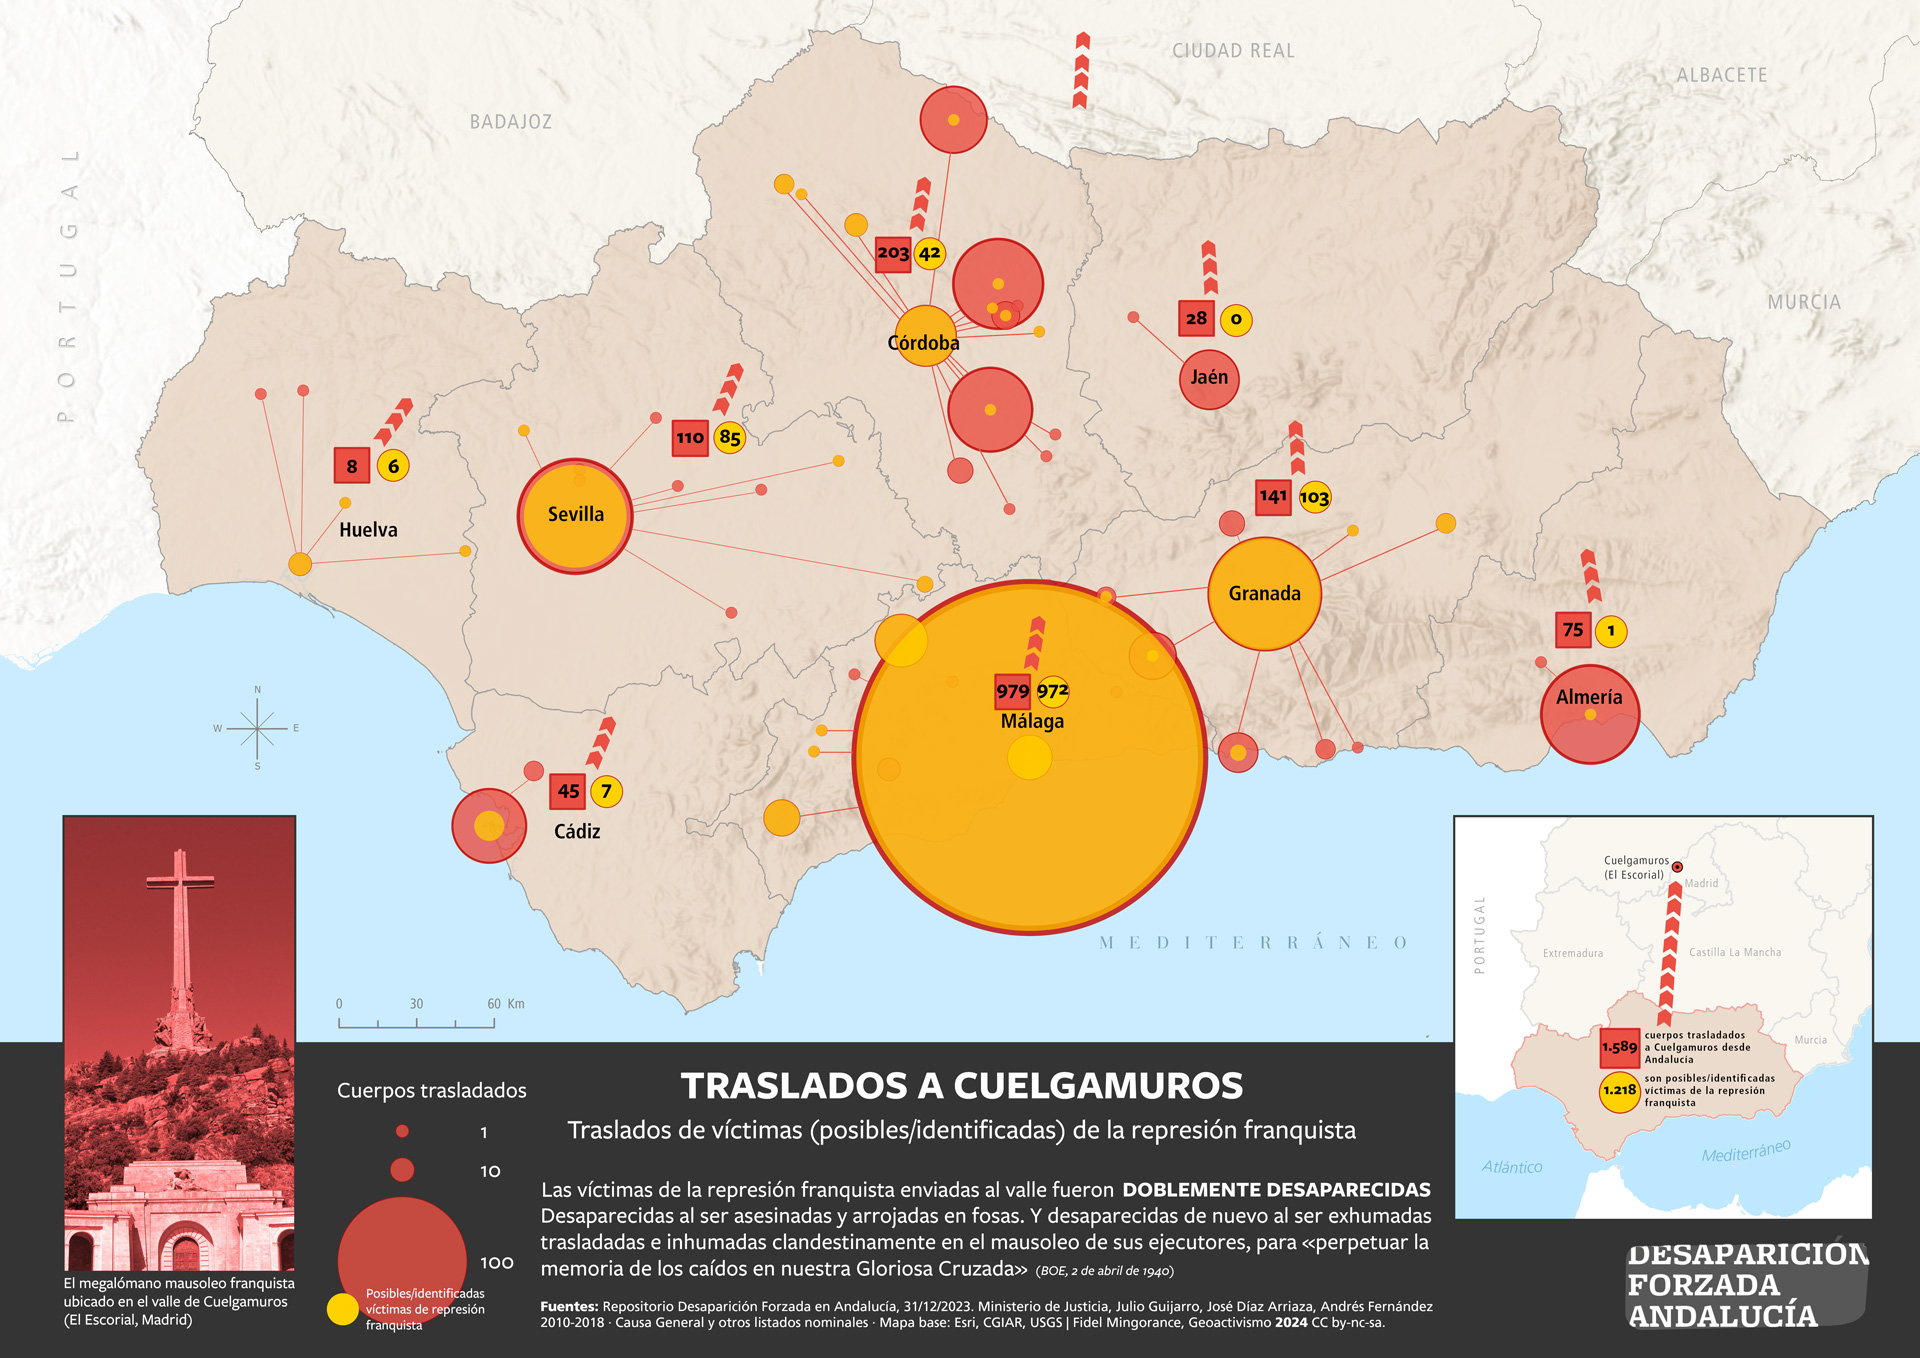 Traslado de víctimas de la represión franquista desde Andalucía a Cuelgamuros